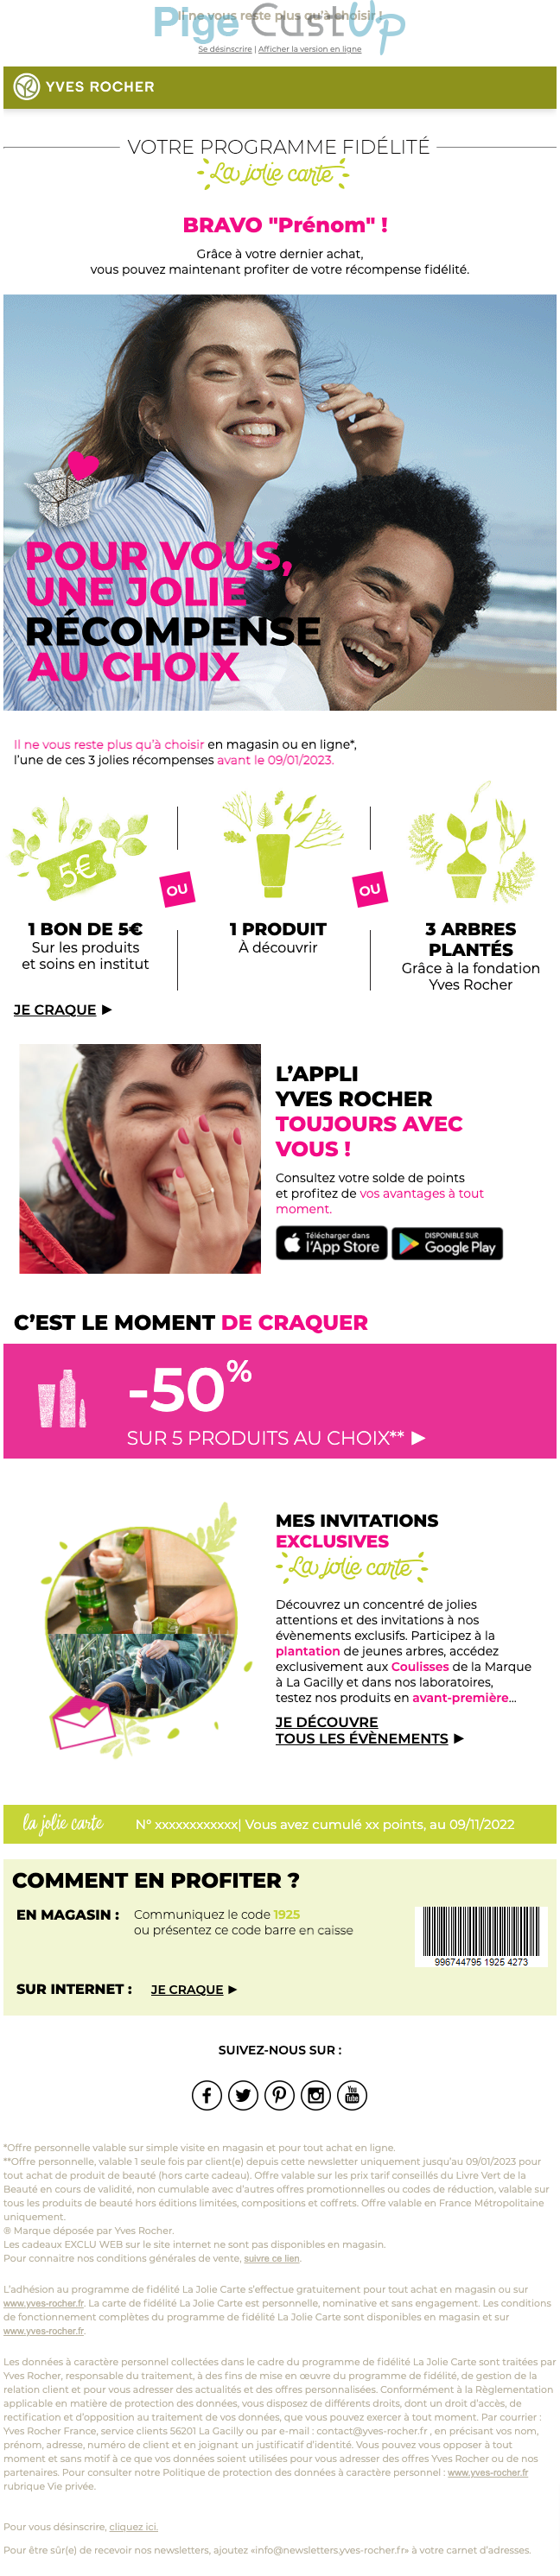 Exemple de Type de media  e-mailing - Yves Rocher - Marketing fidélisation - Animation / Vie du Programme de Fidélité - Recompenses